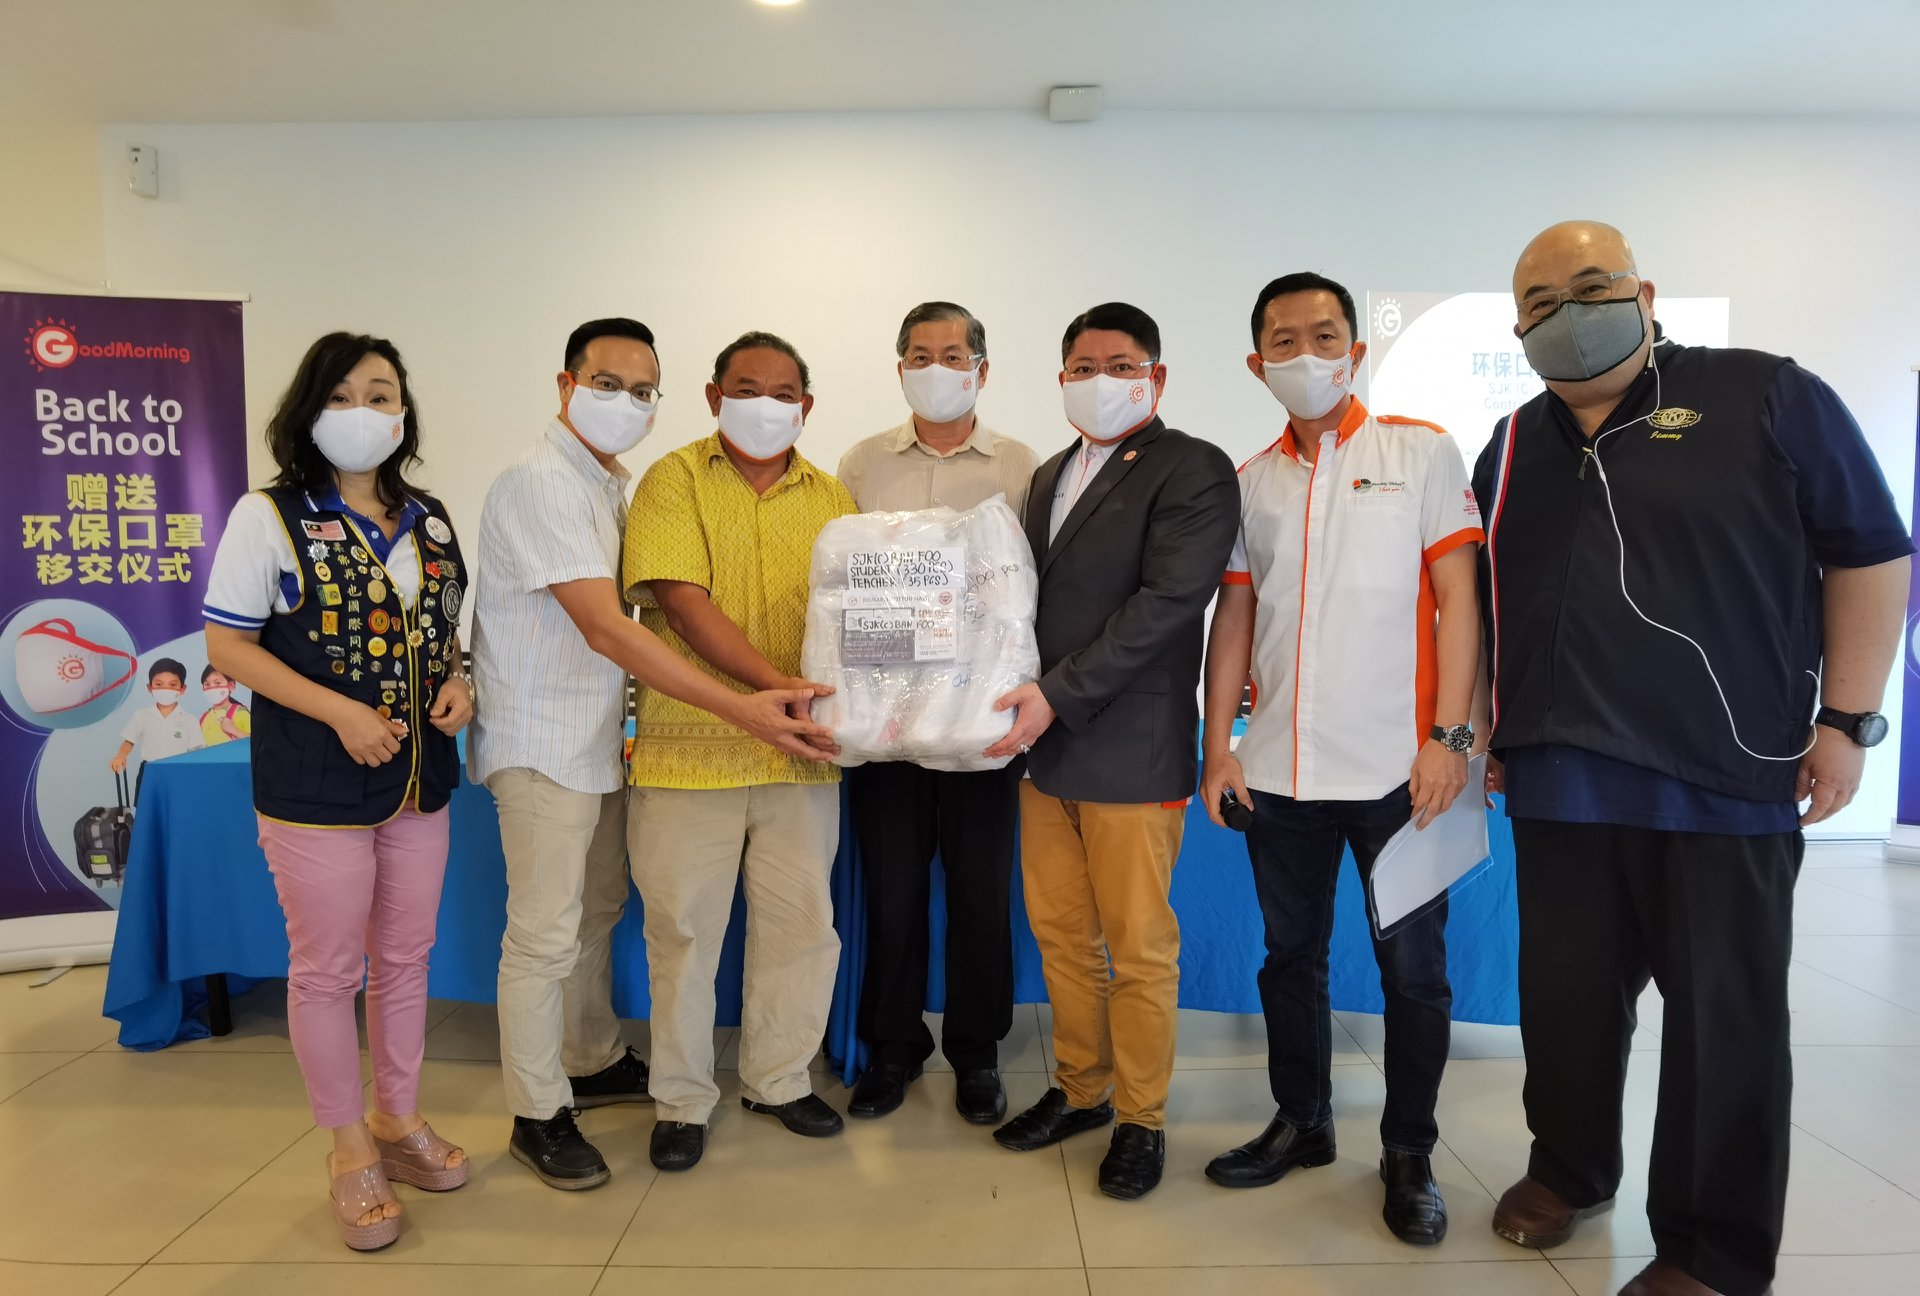 赠送环保口罩移交仪式 Reusable Mask Distribution Ceremony - Johor 15.08.2020 6